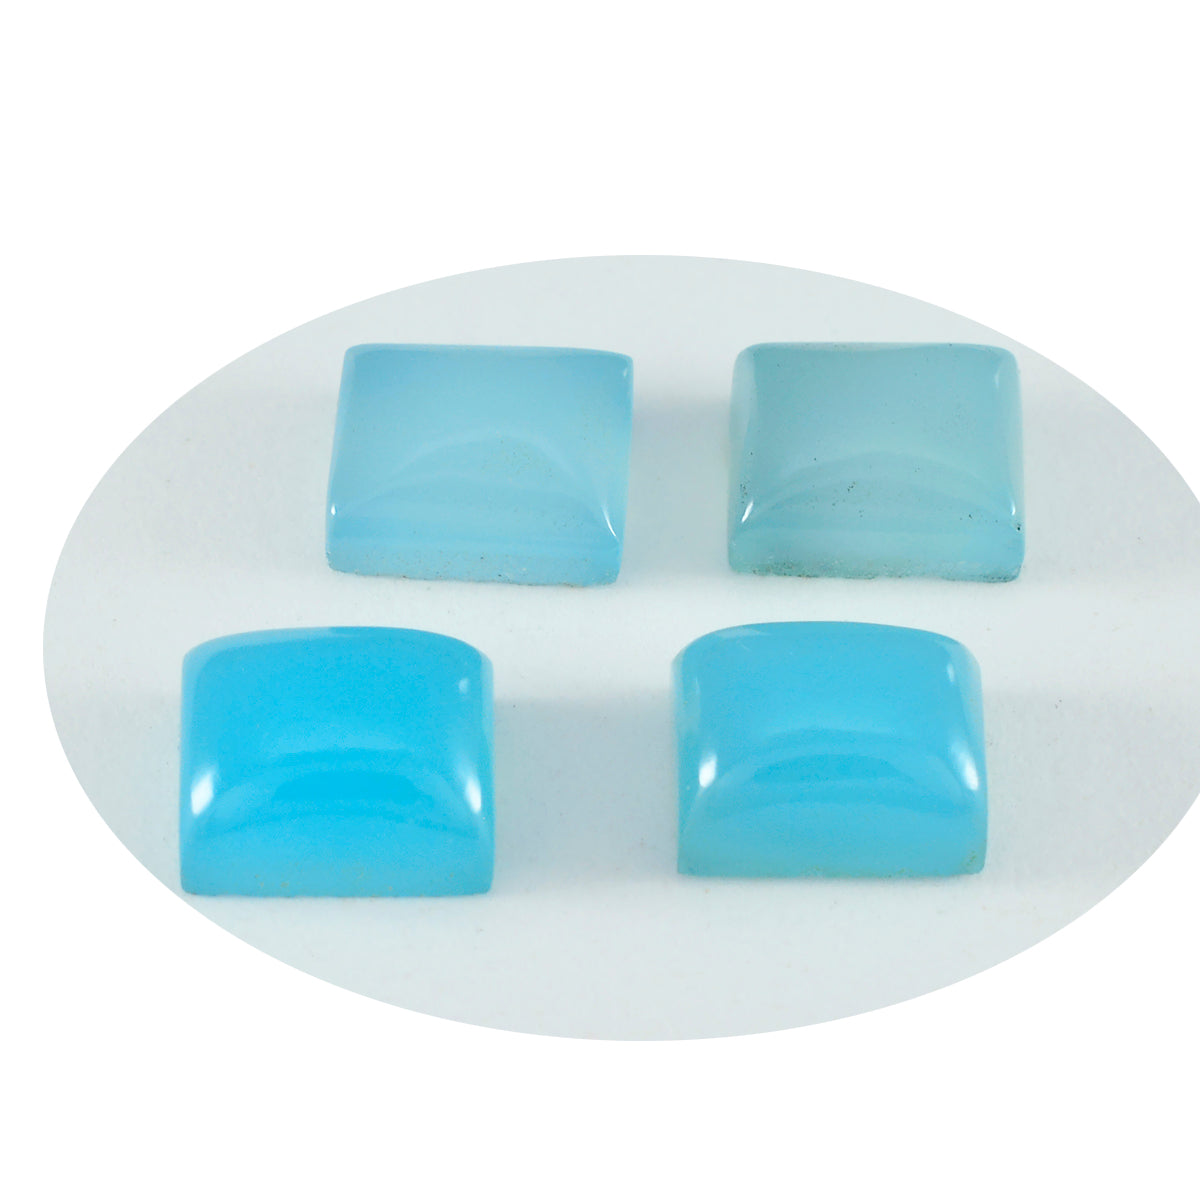 riyogems 1шт синий халцедон кабошон 4x6 мм восьмиугольная форма a1 качественный драгоценный камень